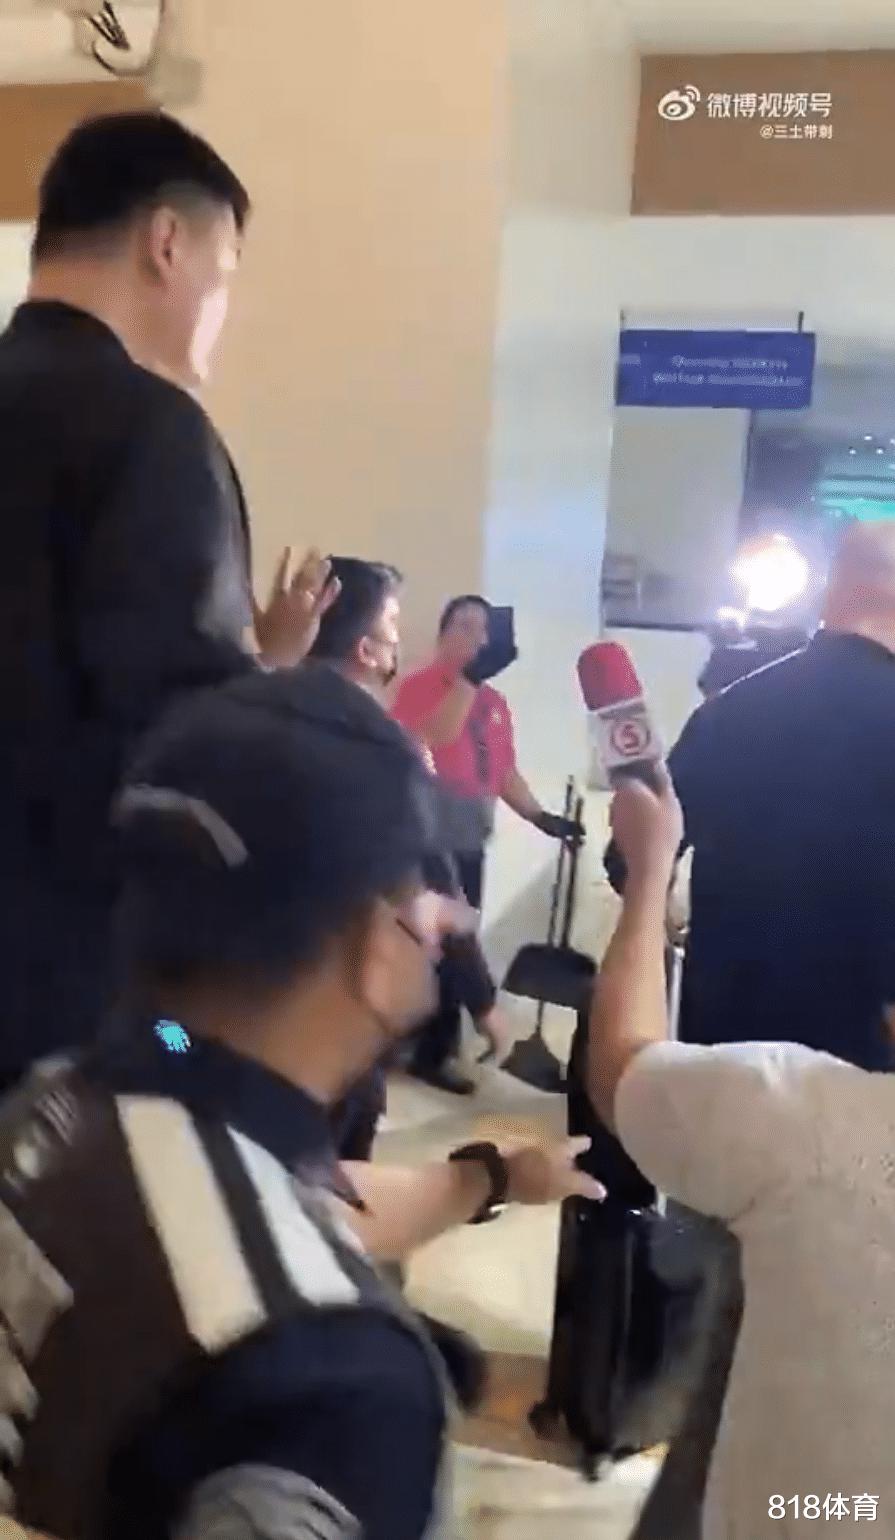 排面! 姚明抵达马尼拉出席世界杯抽签, 10名警察护驾扫地大妈掏手机拍照(6)